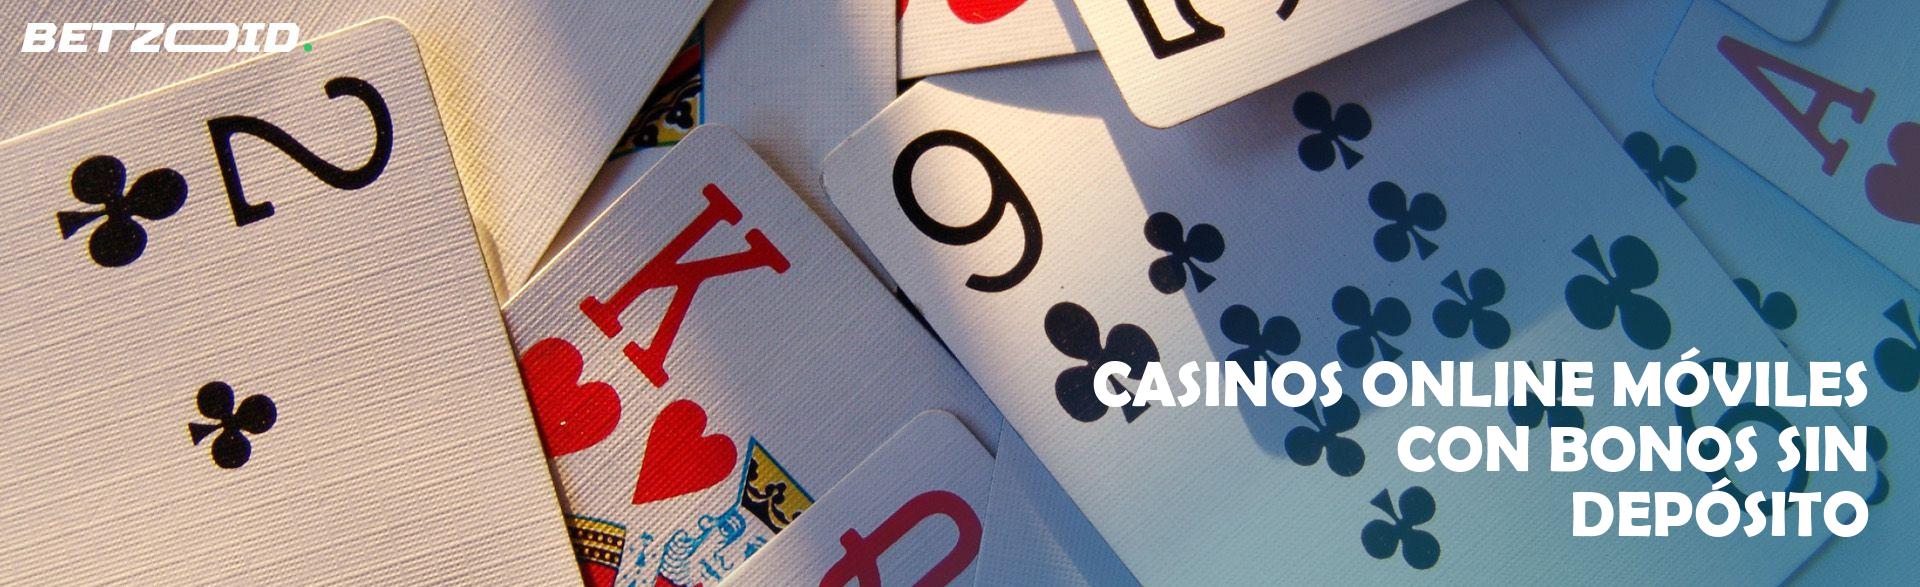 Casinos Online Móviles con Bonos sin Depósito.